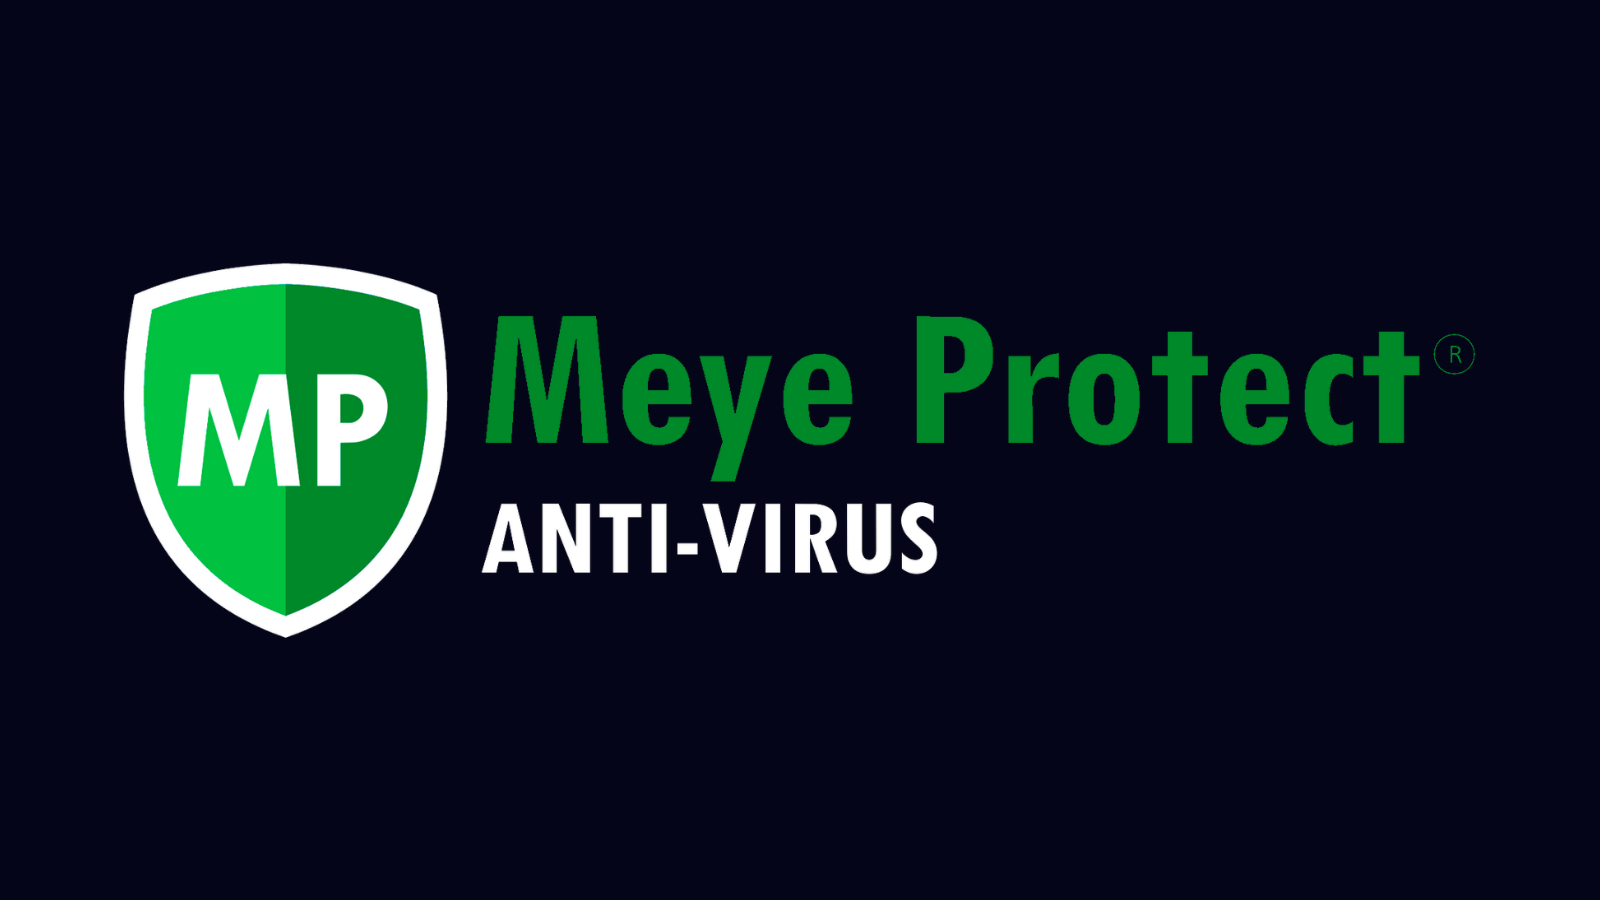 www.meyeprotect.com